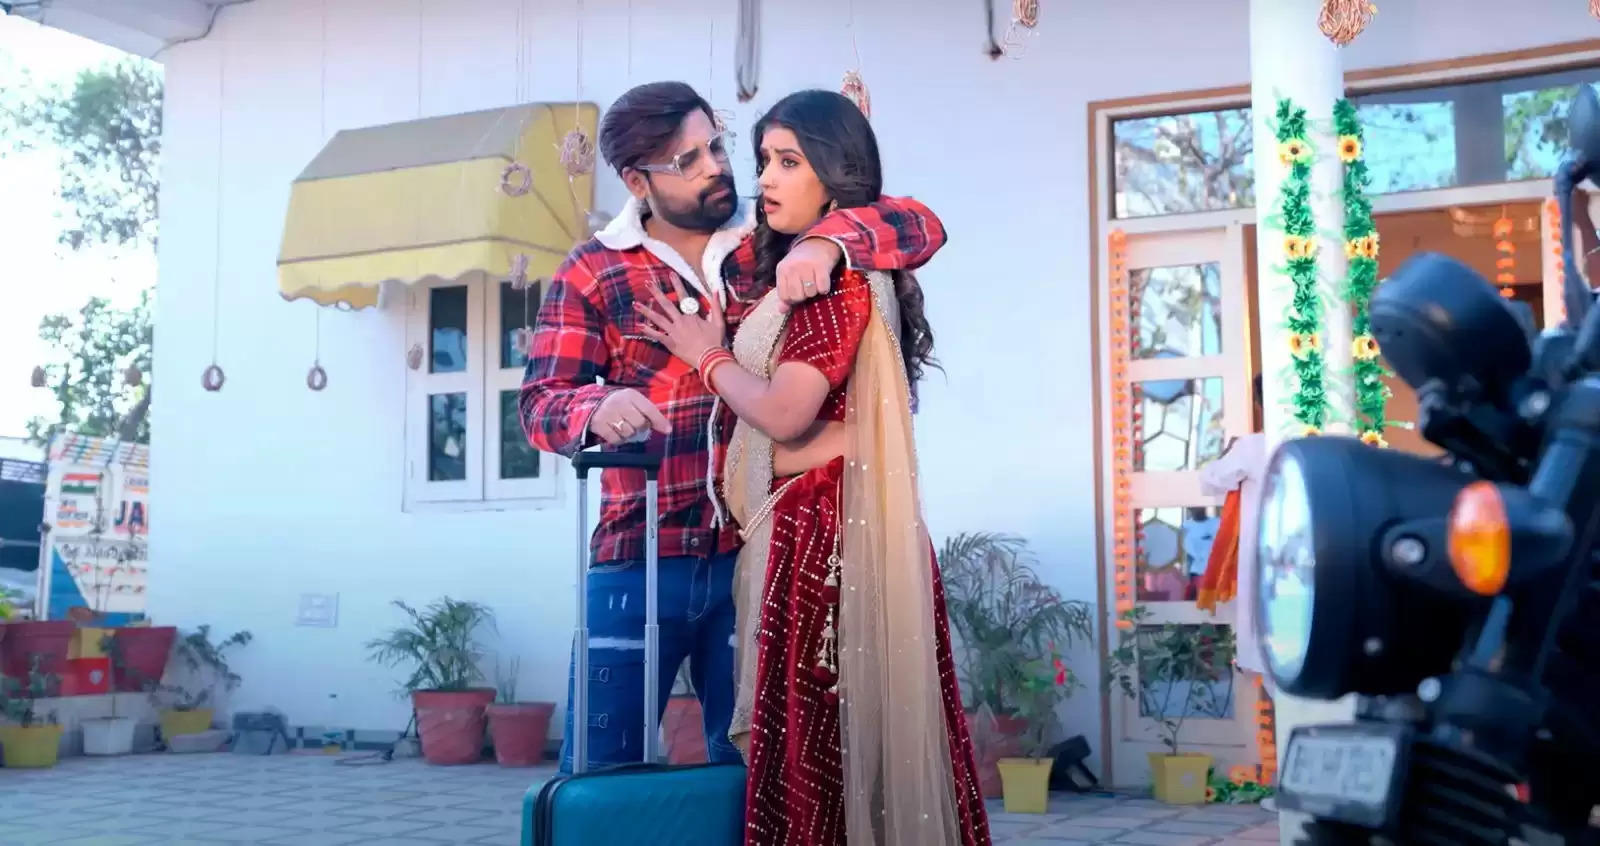 सुपर स्टार राकेश मिश्रा और शिवानी सिंह का नया धमाका,रिलीज के साथ वायरल हुआ गाना "सावत के दीवाना"